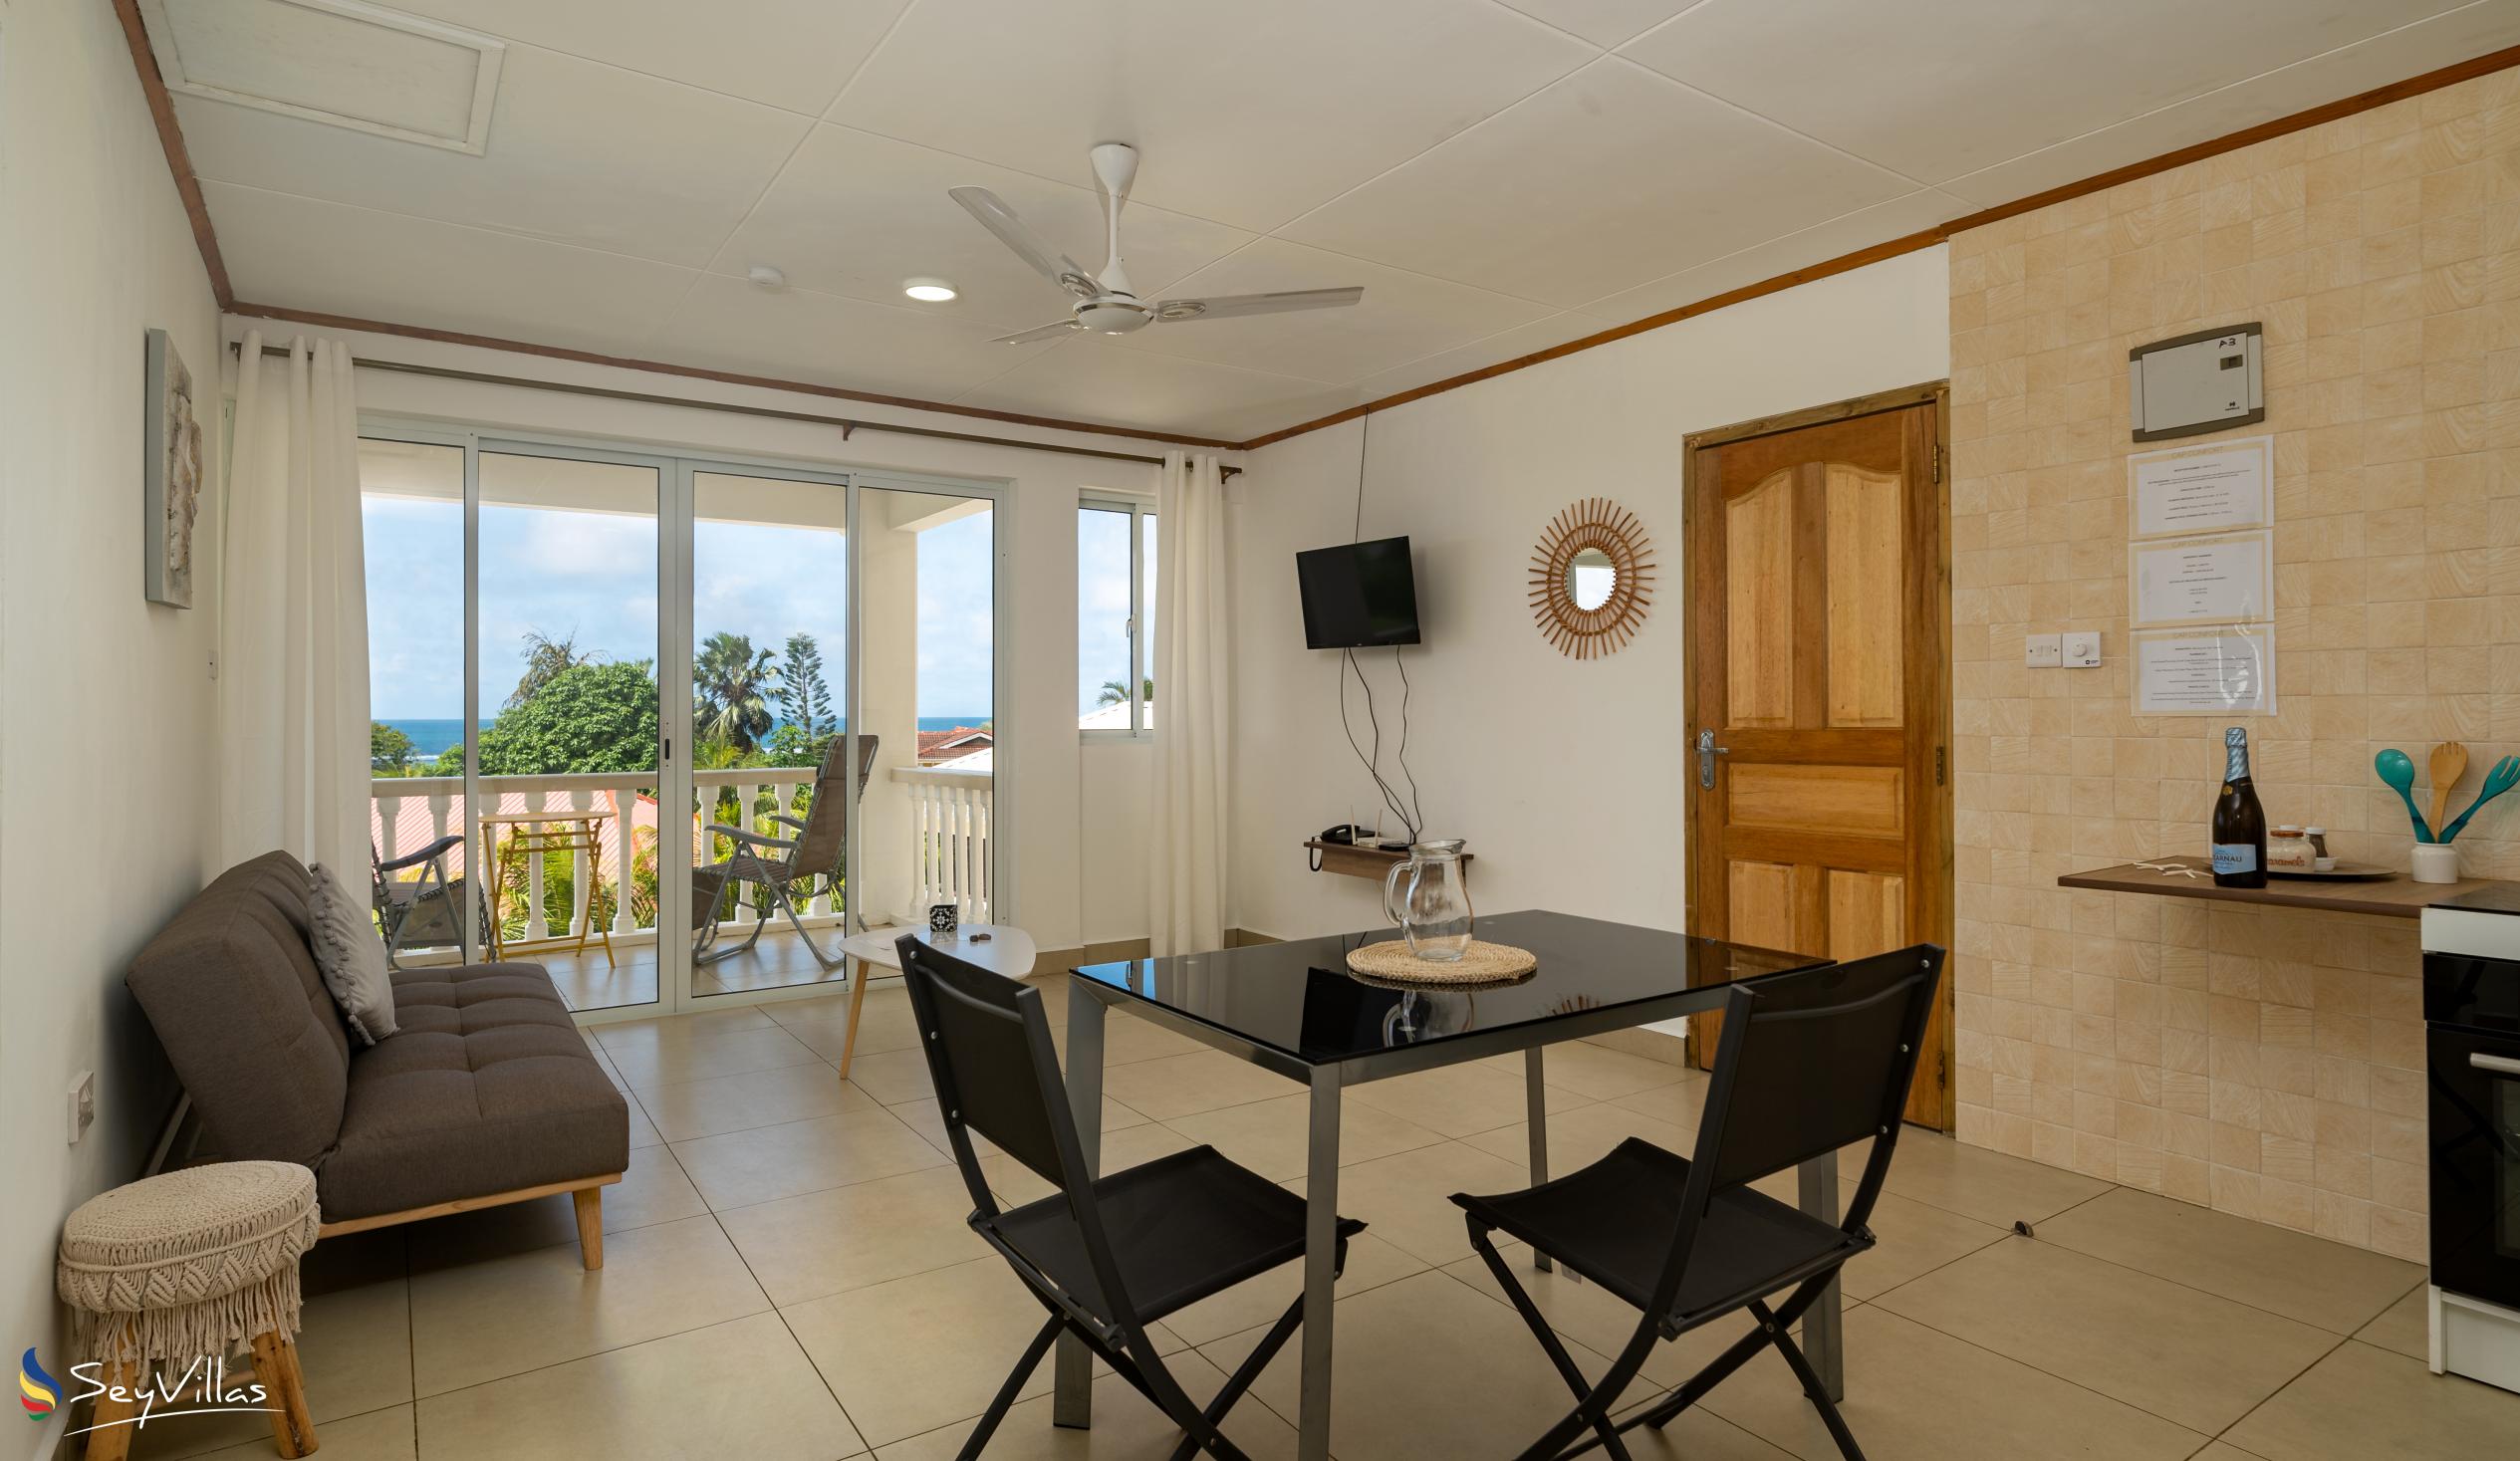 Photo 72: Cap Confort - 1-Bedroom Apartment - Mahé (Seychelles)